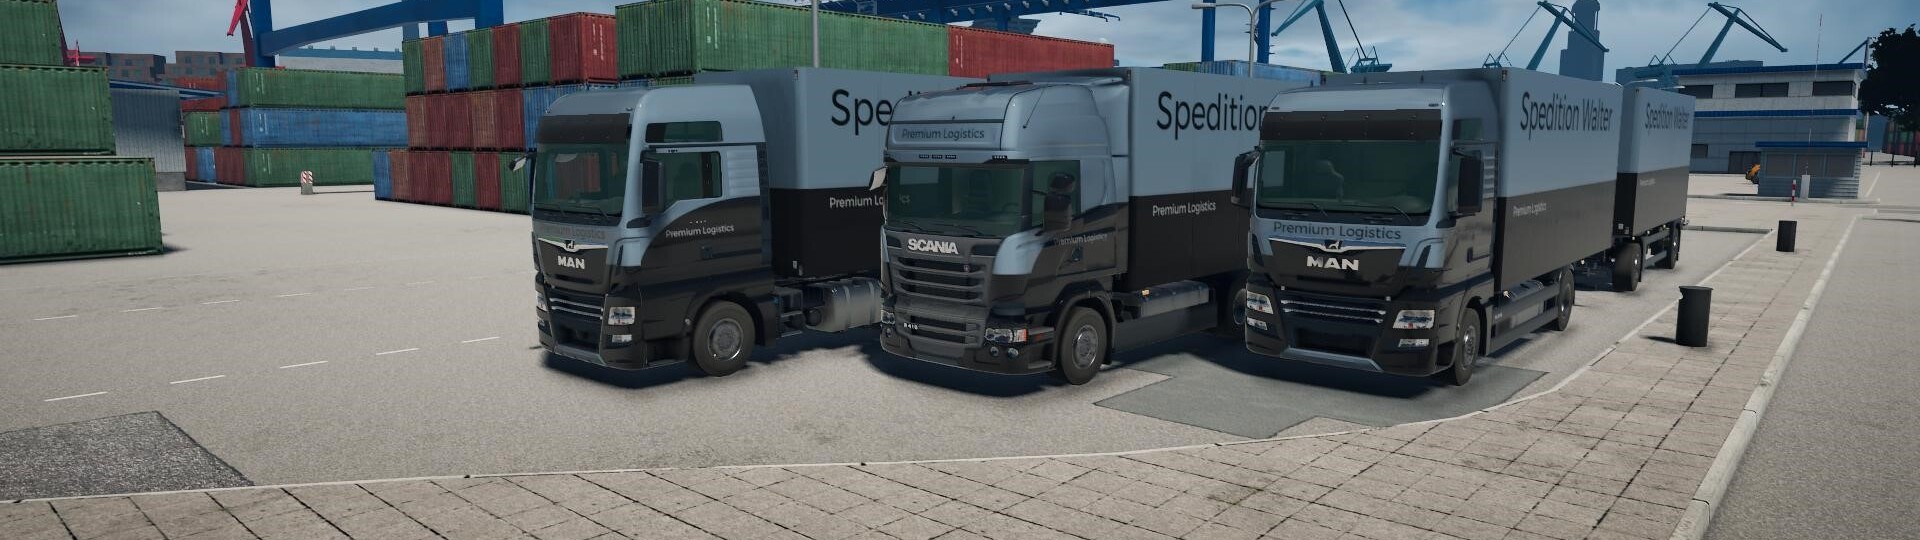 Truckový simulátor On the Road míří na PS4 | Novinky